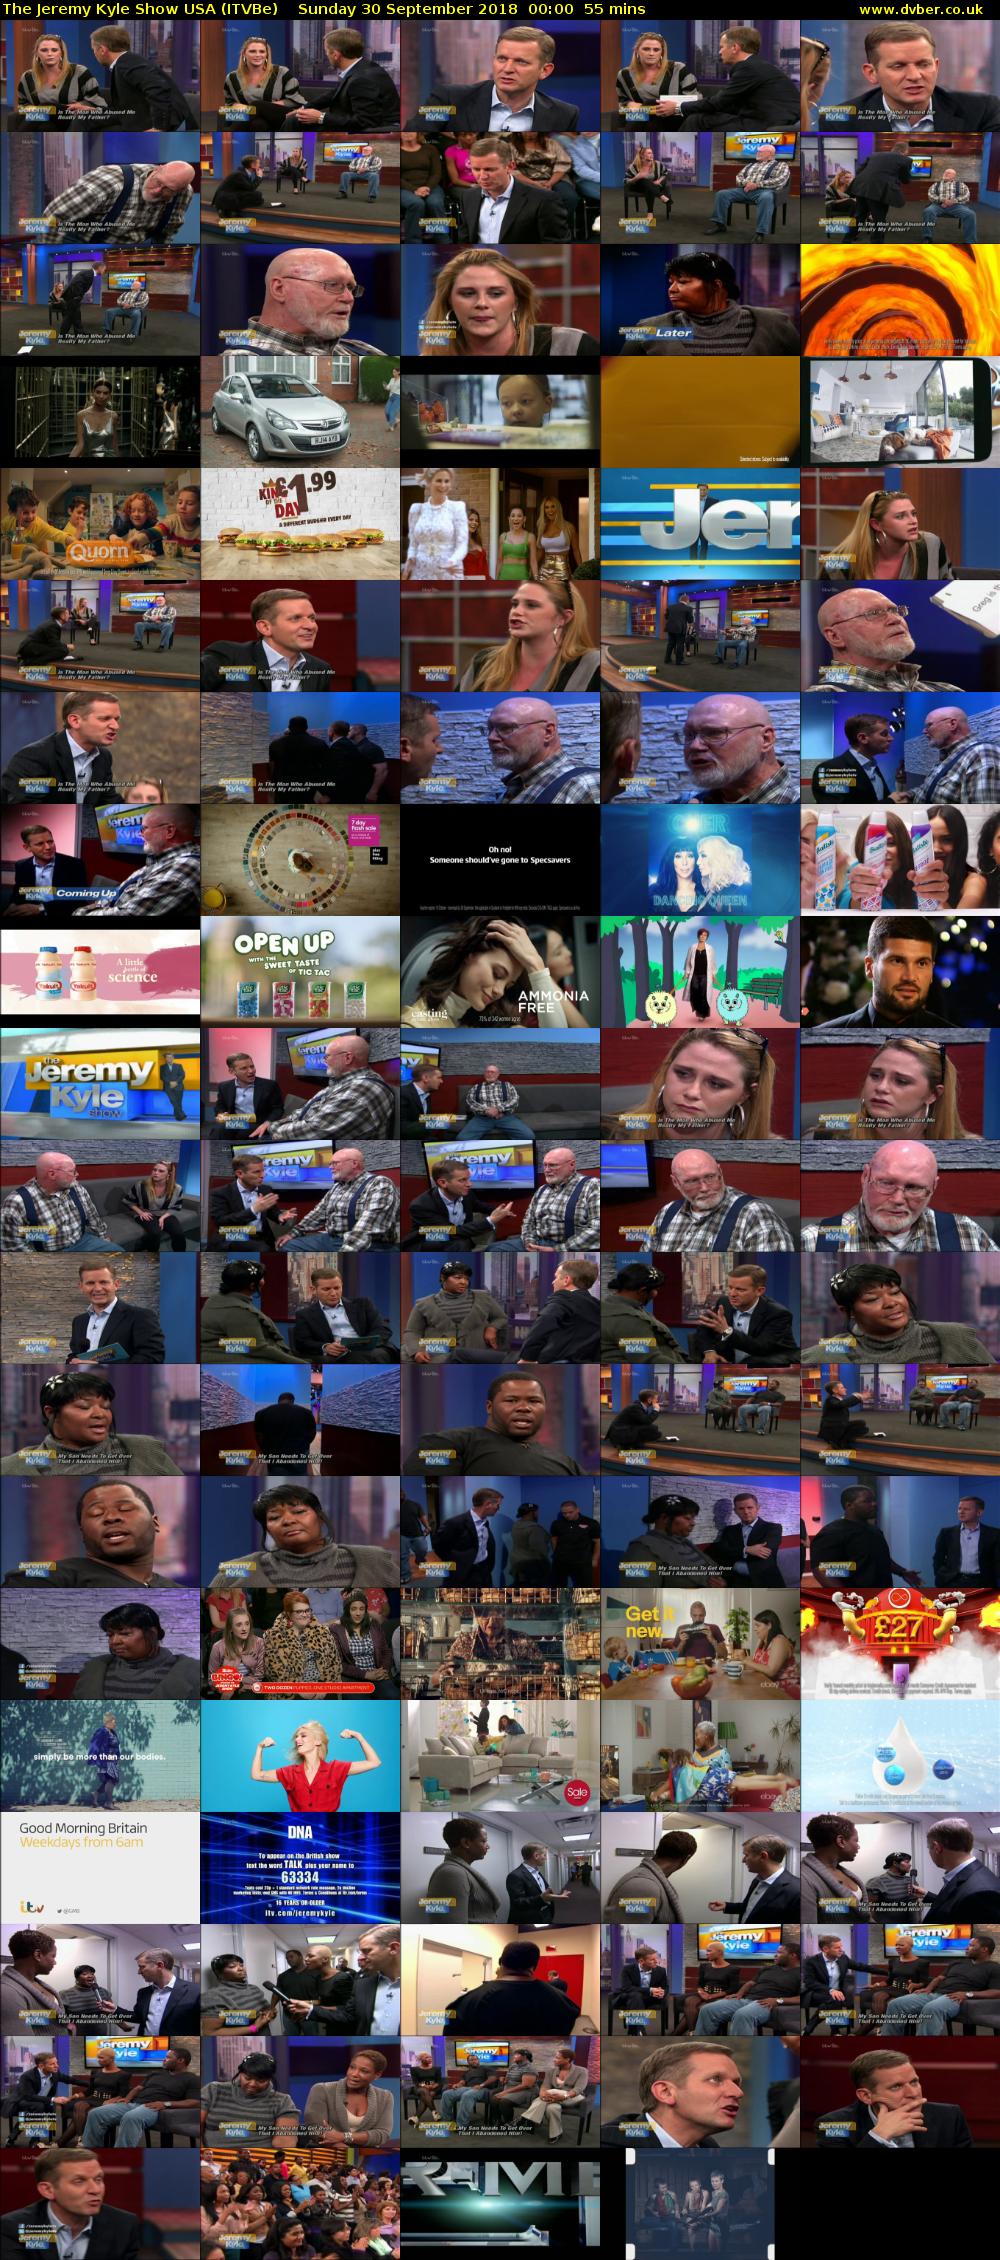 The Jeremy Kyle Show USA (ITVBe) Sunday 30 September 2018 00:00 - 00:55